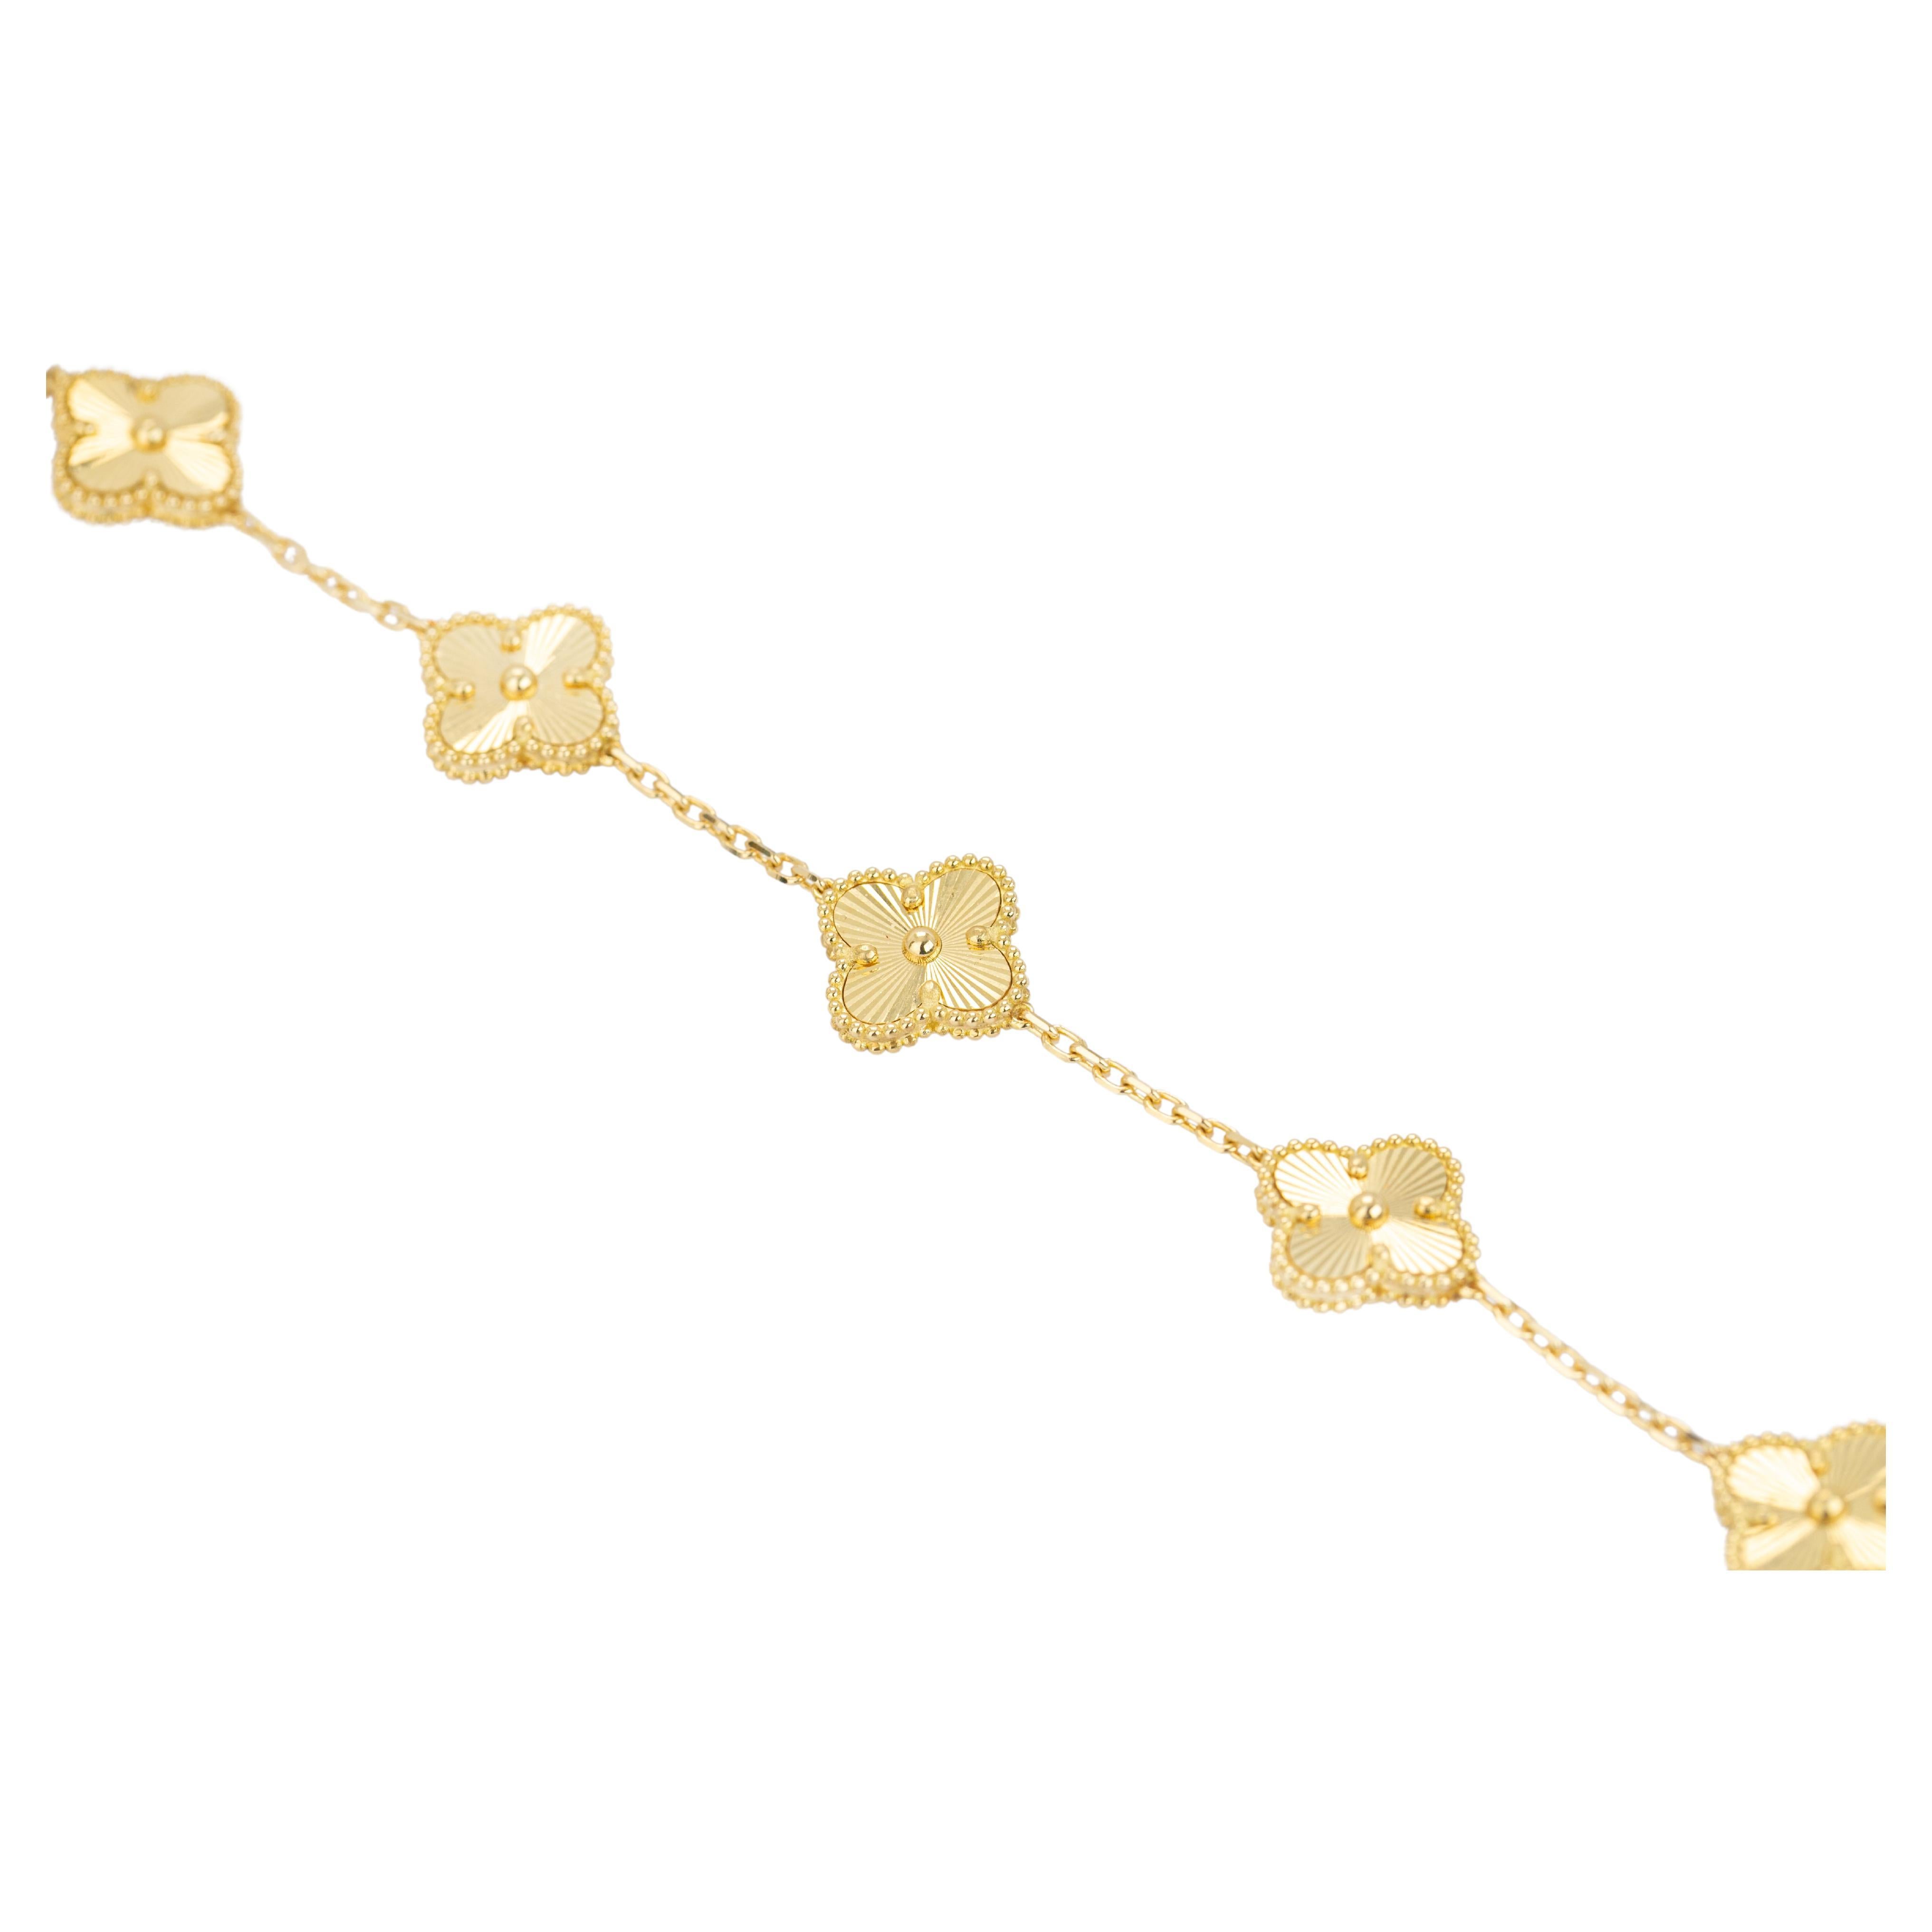 18 Karat Goldarmband mit kühner Kette, 18 Karat Goldkette Armband, rechteckiges Armband